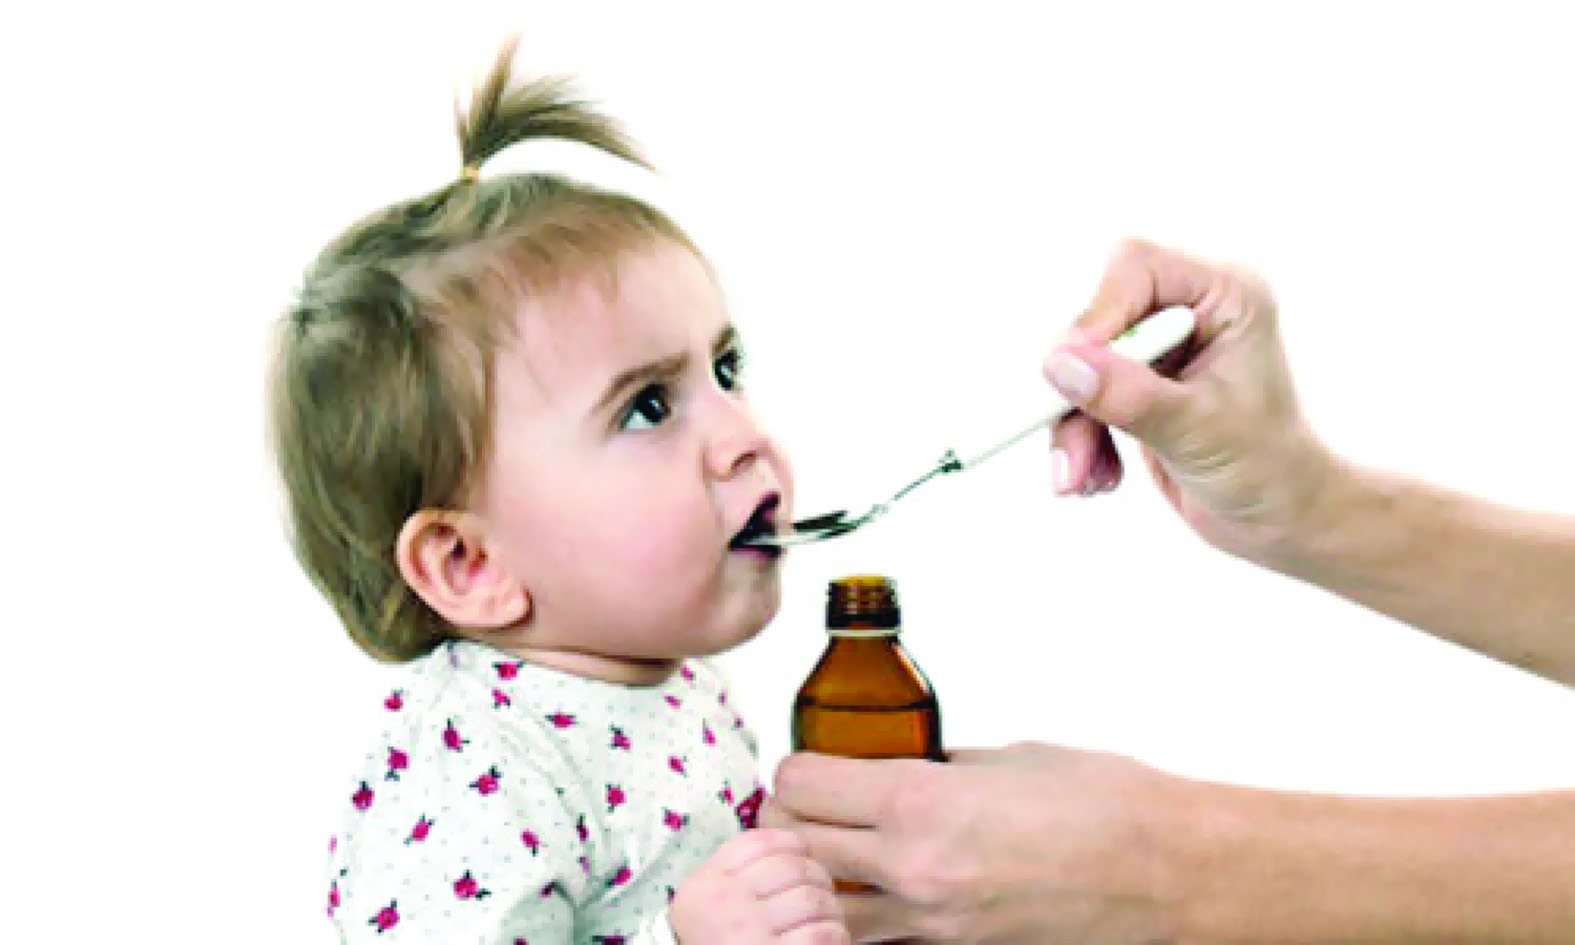 استخدام المضادات الحيوية في علاج الأطفال قد يصيبهم بمرض السكري